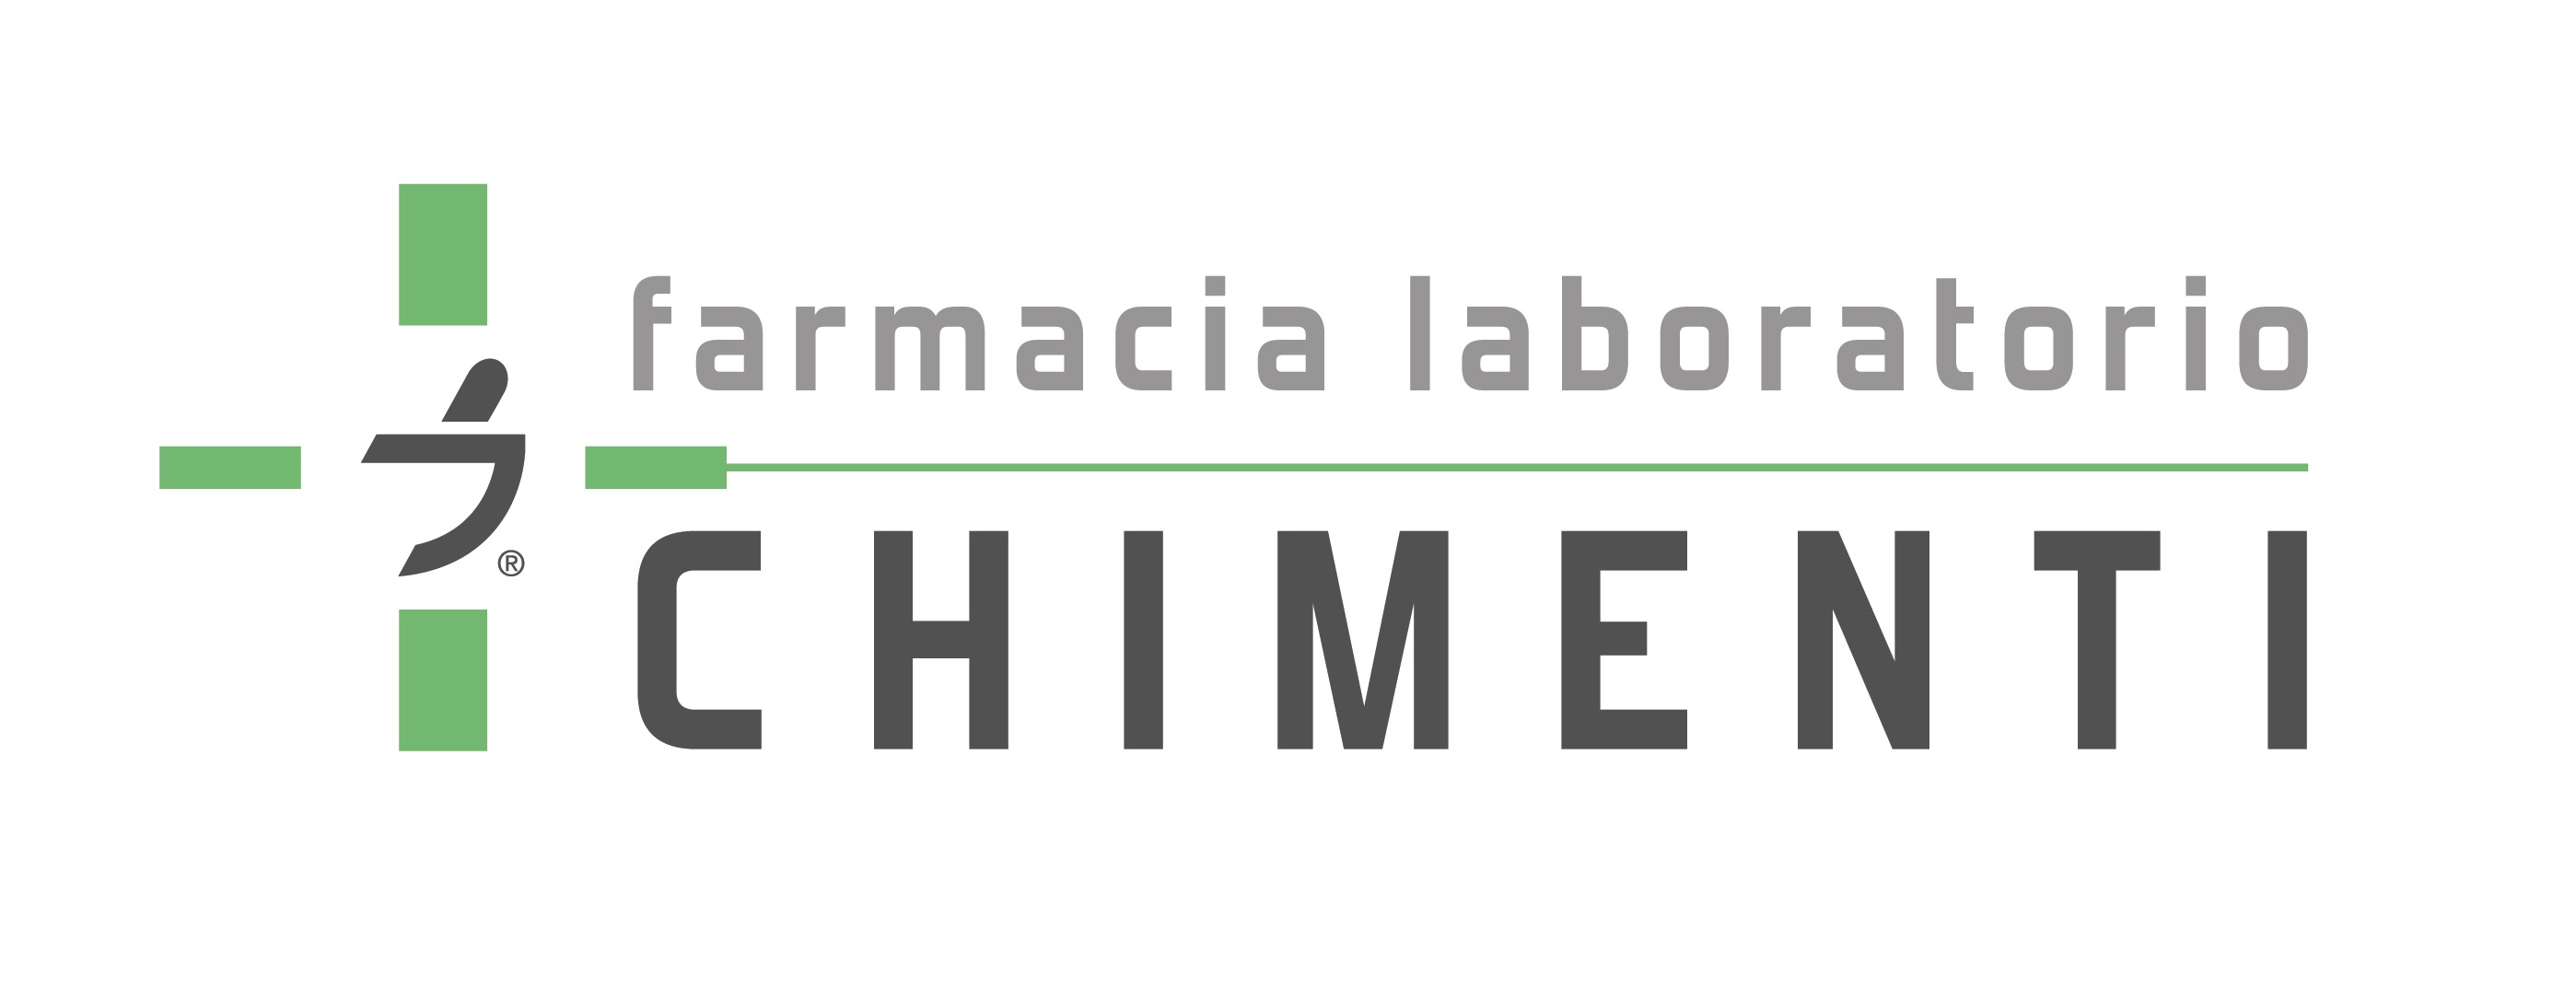 Logo FARMACIA CHIMENTI